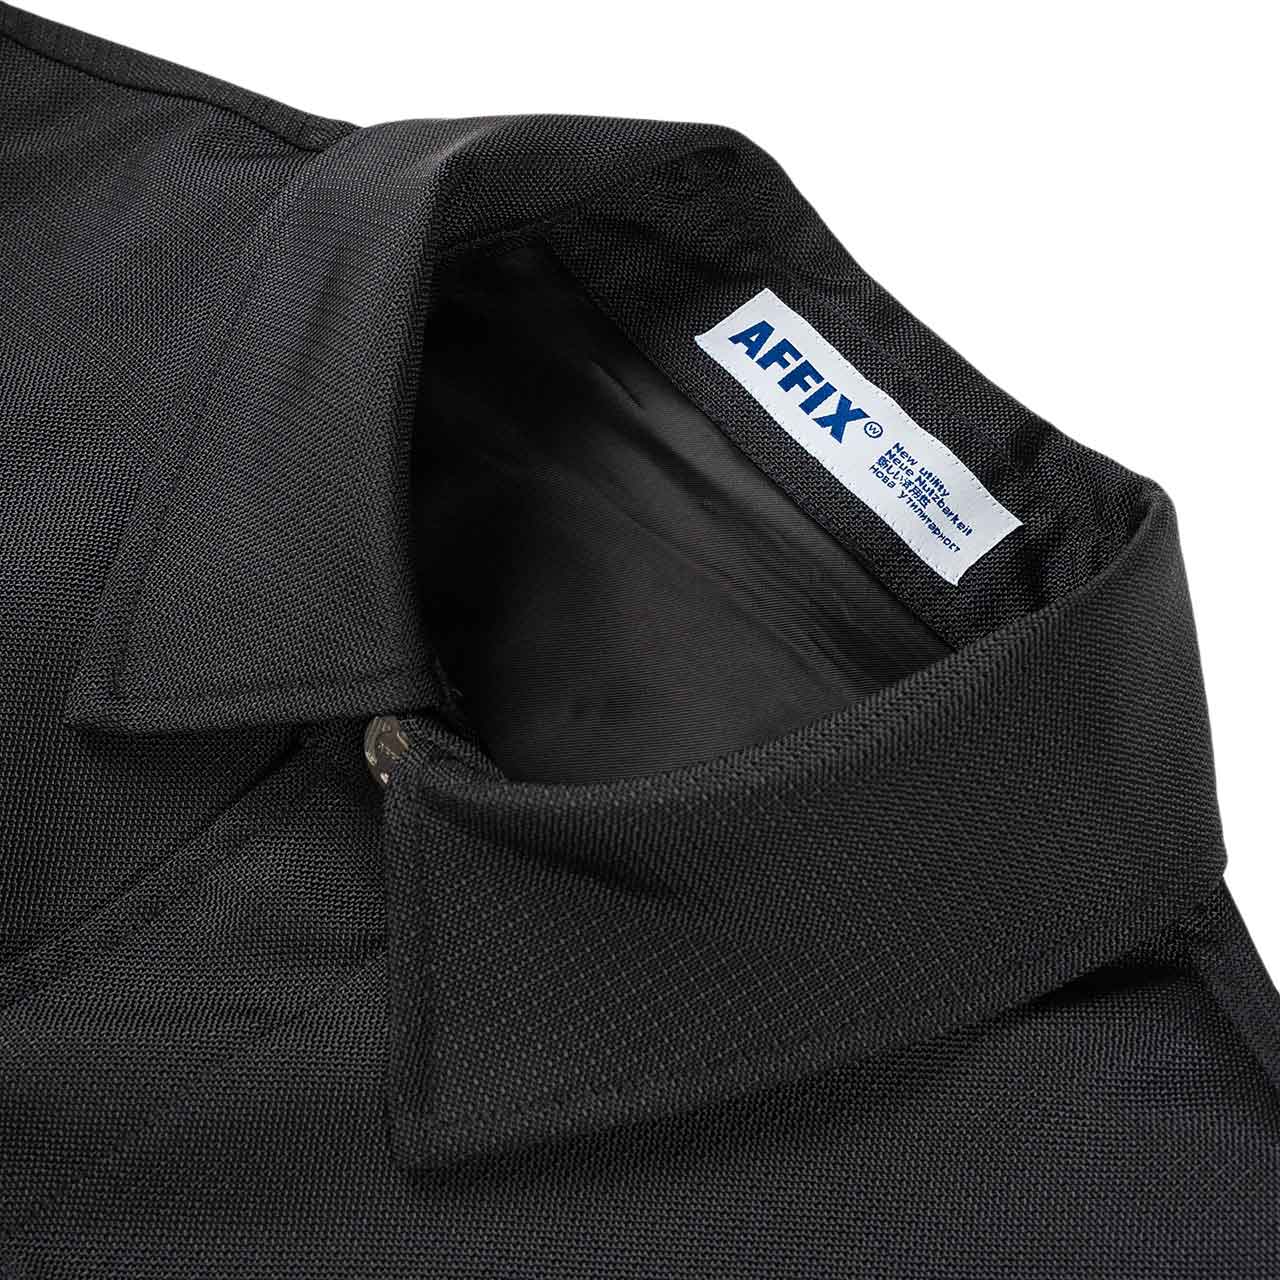 affix cordura double vent coat (black) - aw20co01 - a.plus - Image - 3